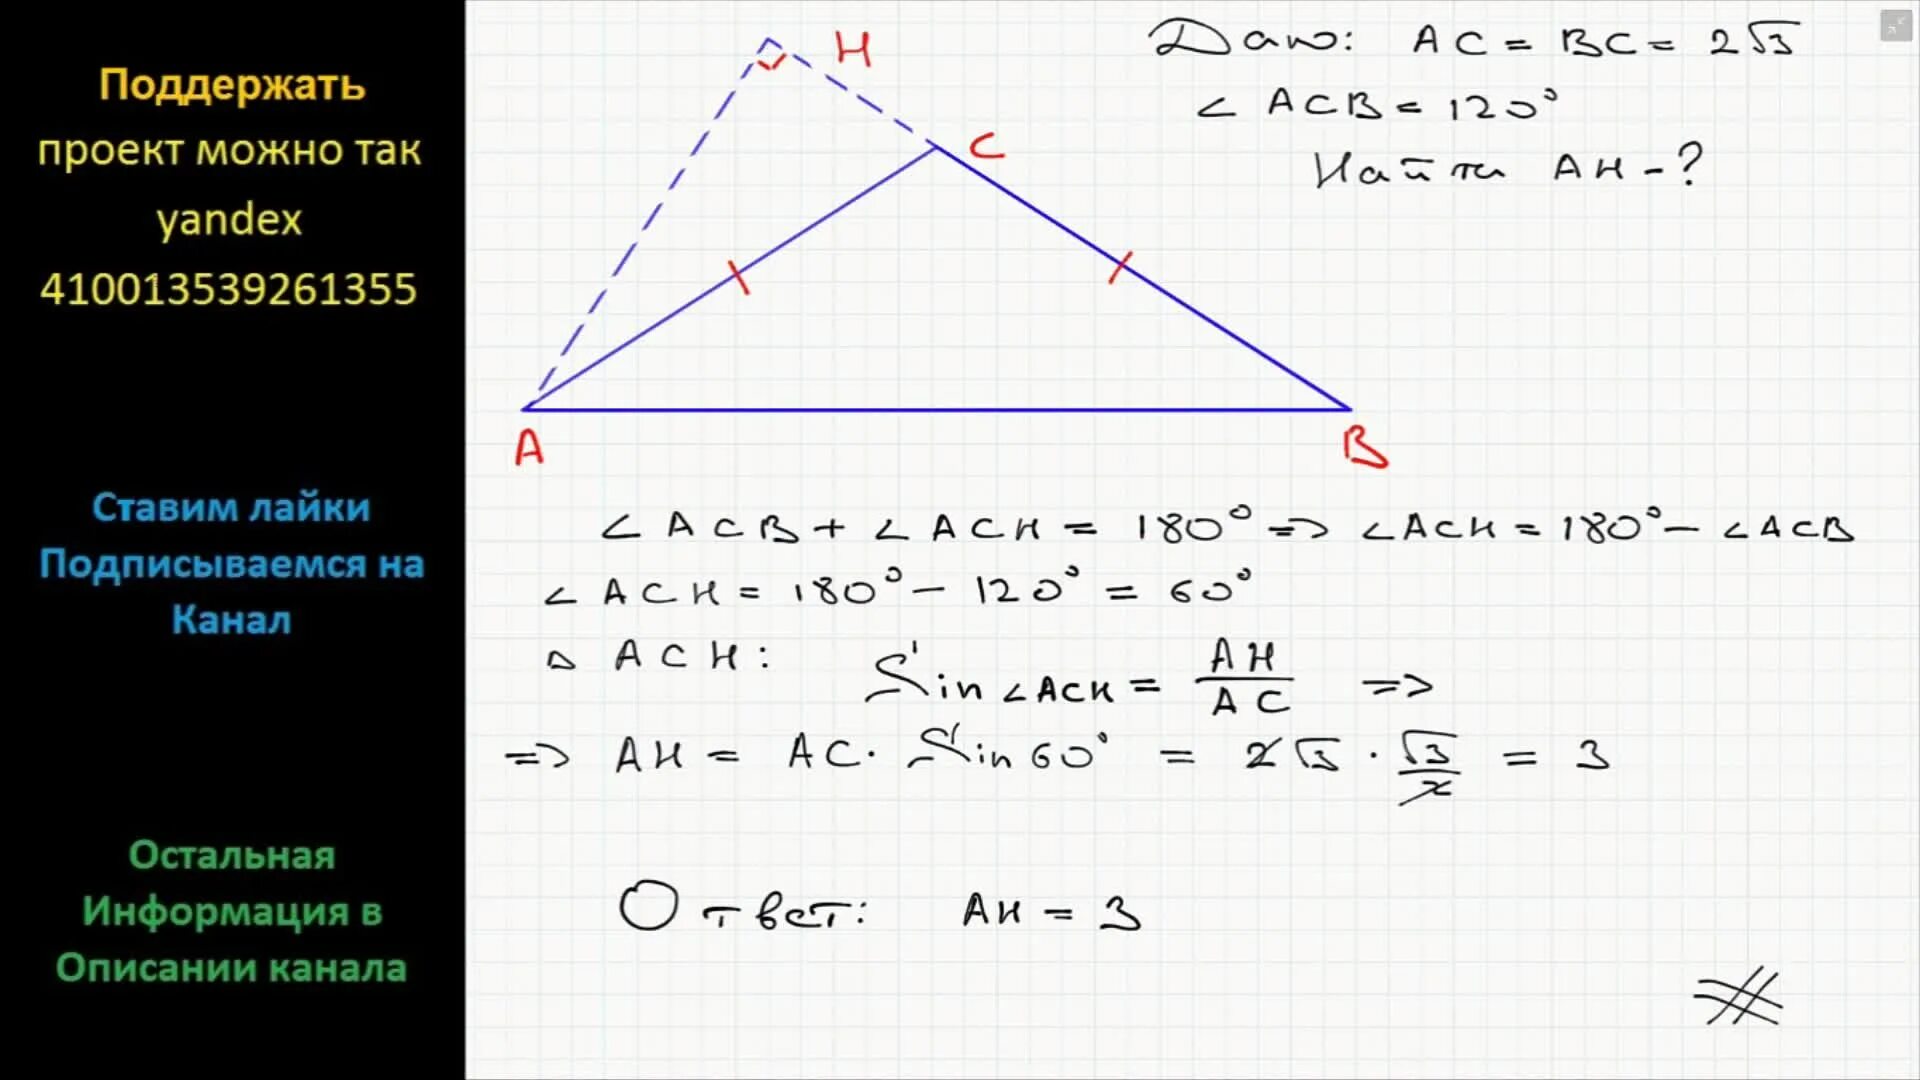 В треугольнике абс аб и ас равны. Угол противолежащий основанию равнобедренного треугольника 120. Угол,противолежащий оснваниюравнобедренного треугольника Раве 120. Угол противолежащий основанию равнобедренного треугольника. Угол противолежащий основанию равнобедренного треугольника равен 120.